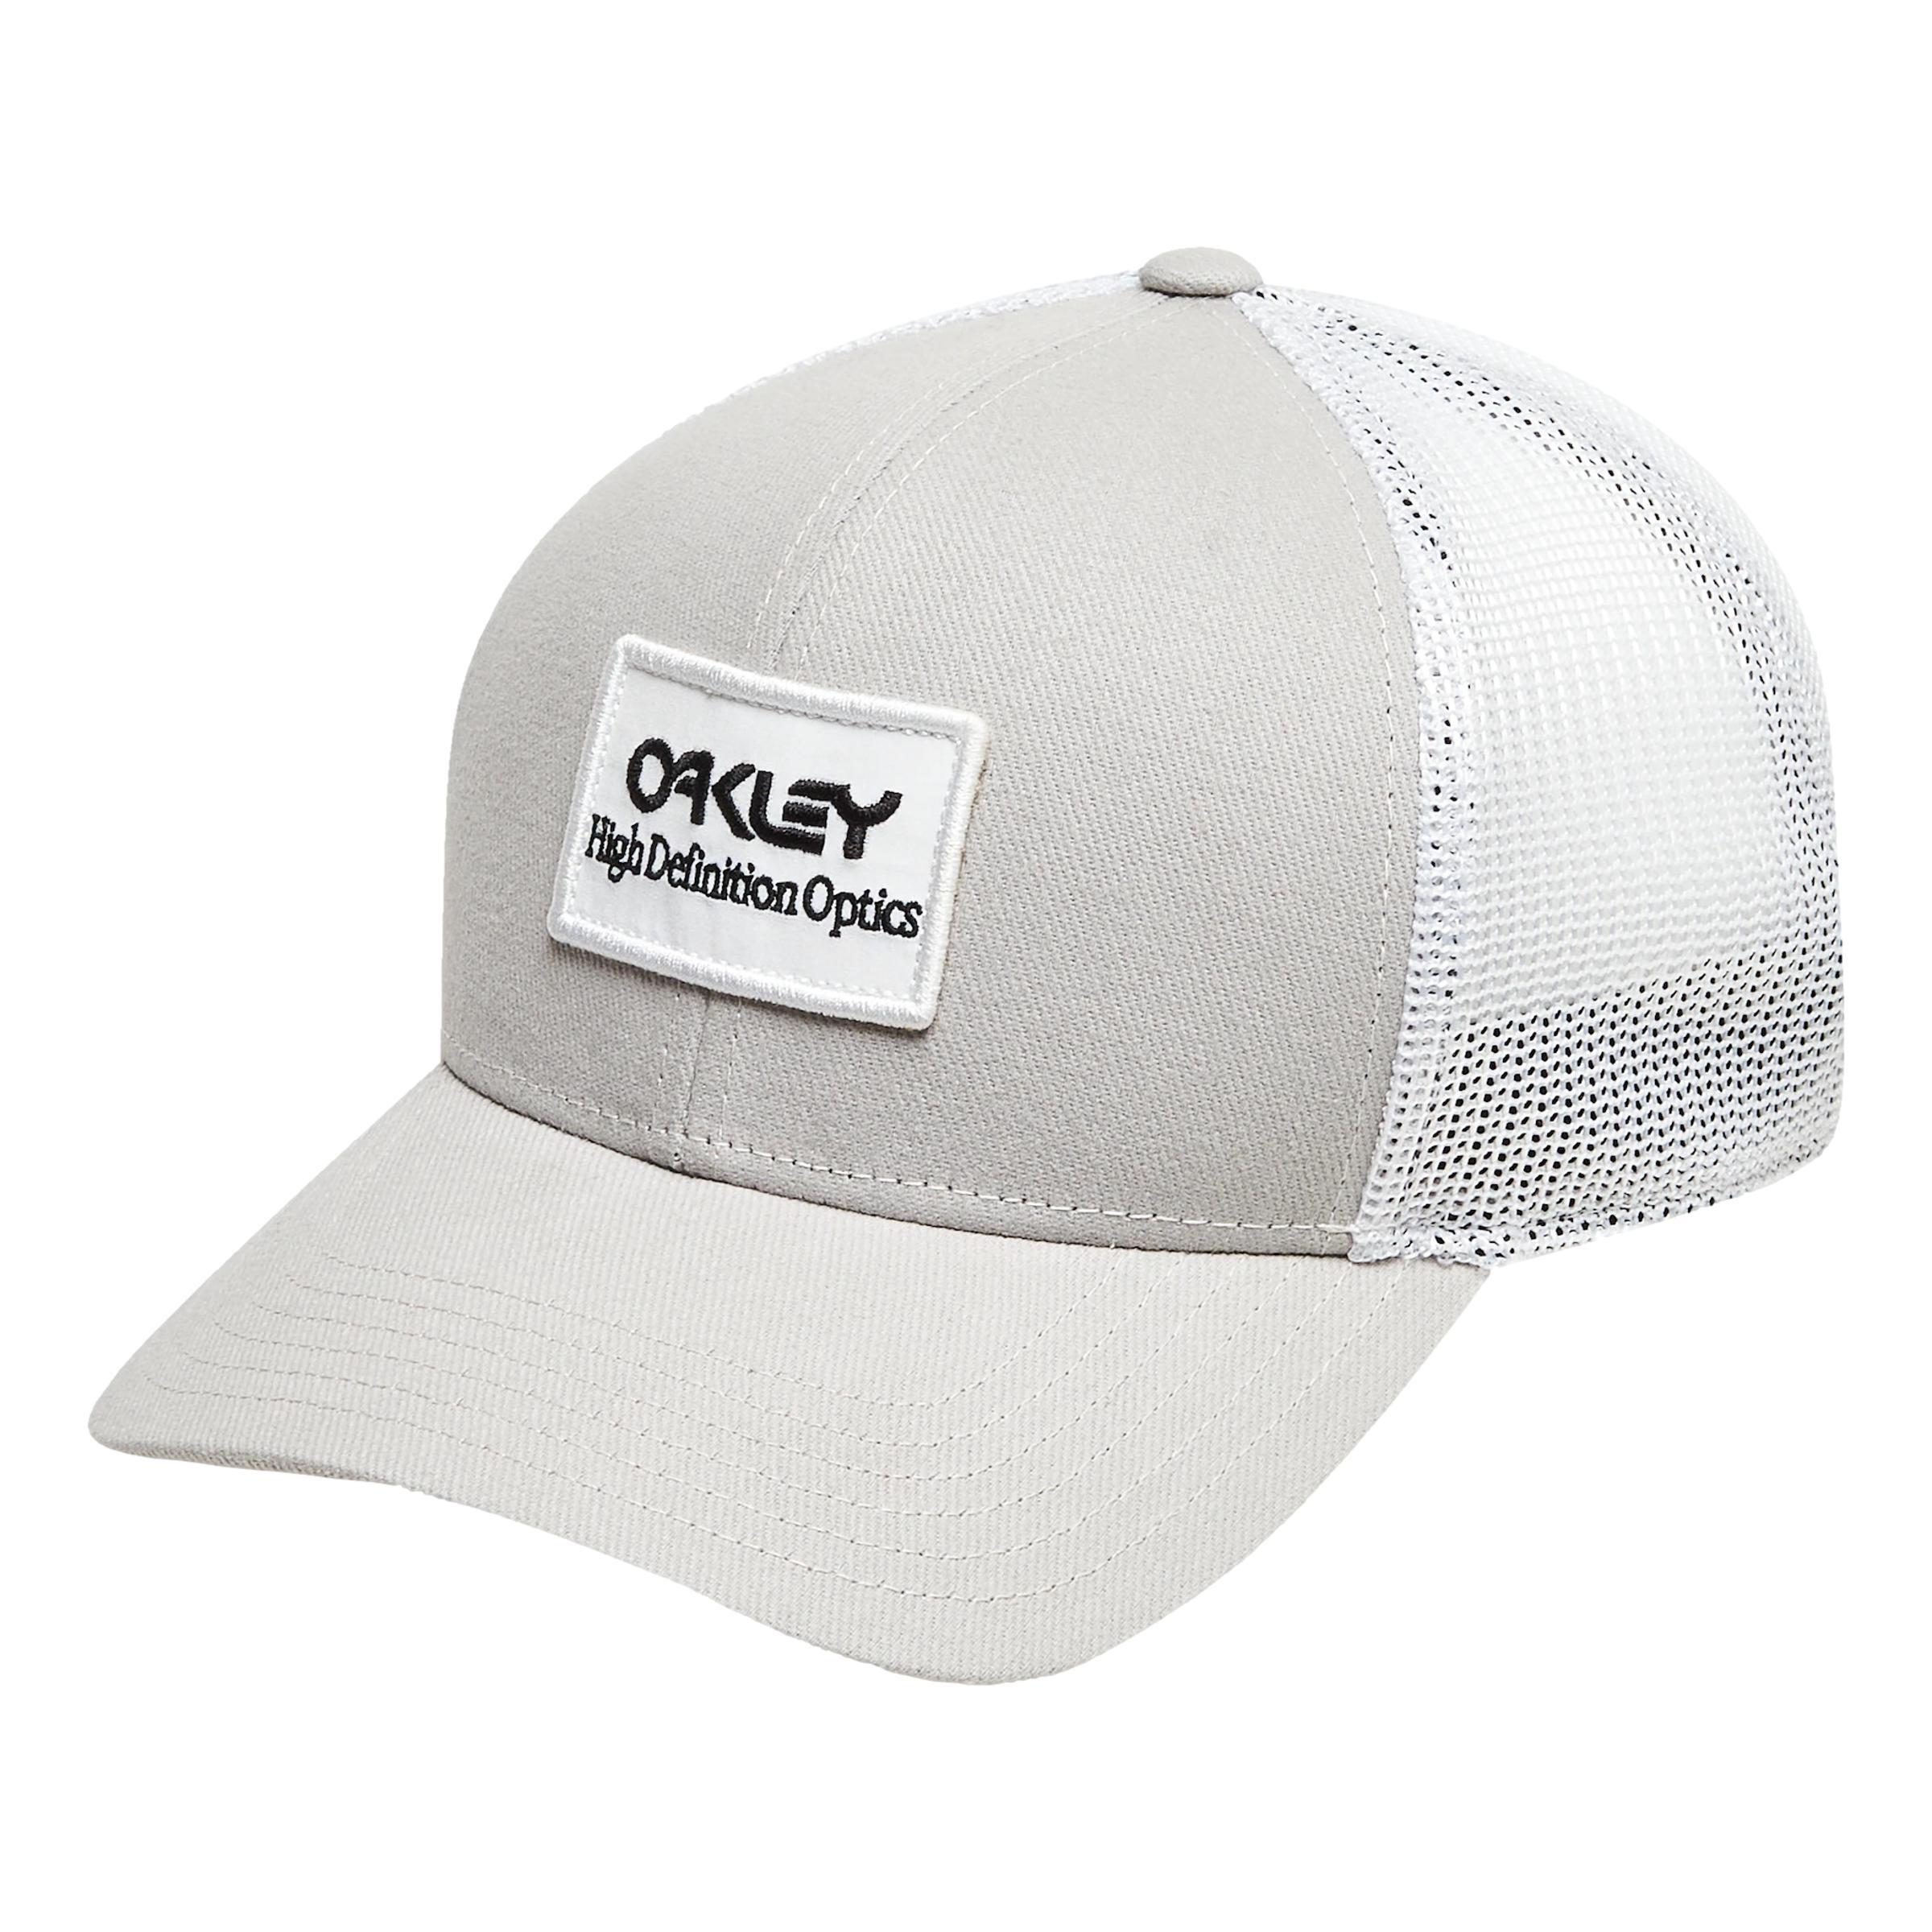 Oakley B1B HDO PATCH TRUCKER HAT Stone Gray - U 1/3